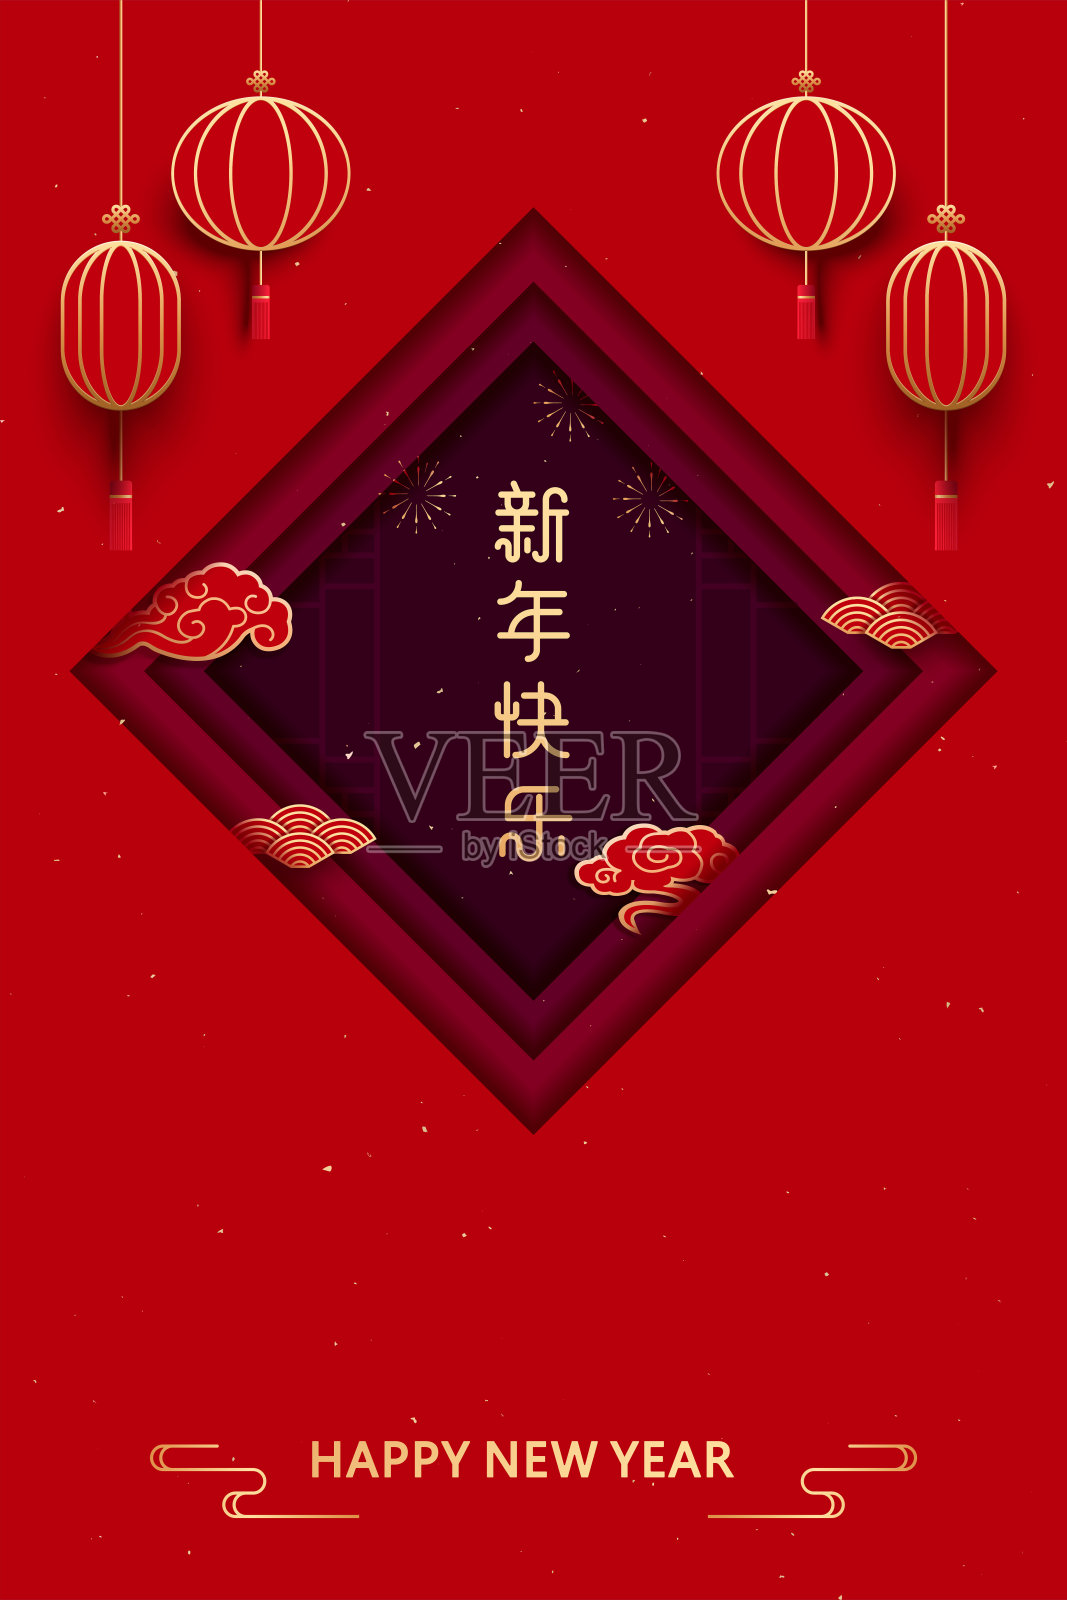 春节贺卡模板，红色矢量背景插图，红灯笼和祥云图案，春节夫妇字:新年快乐，横幅或海报设计模板素材